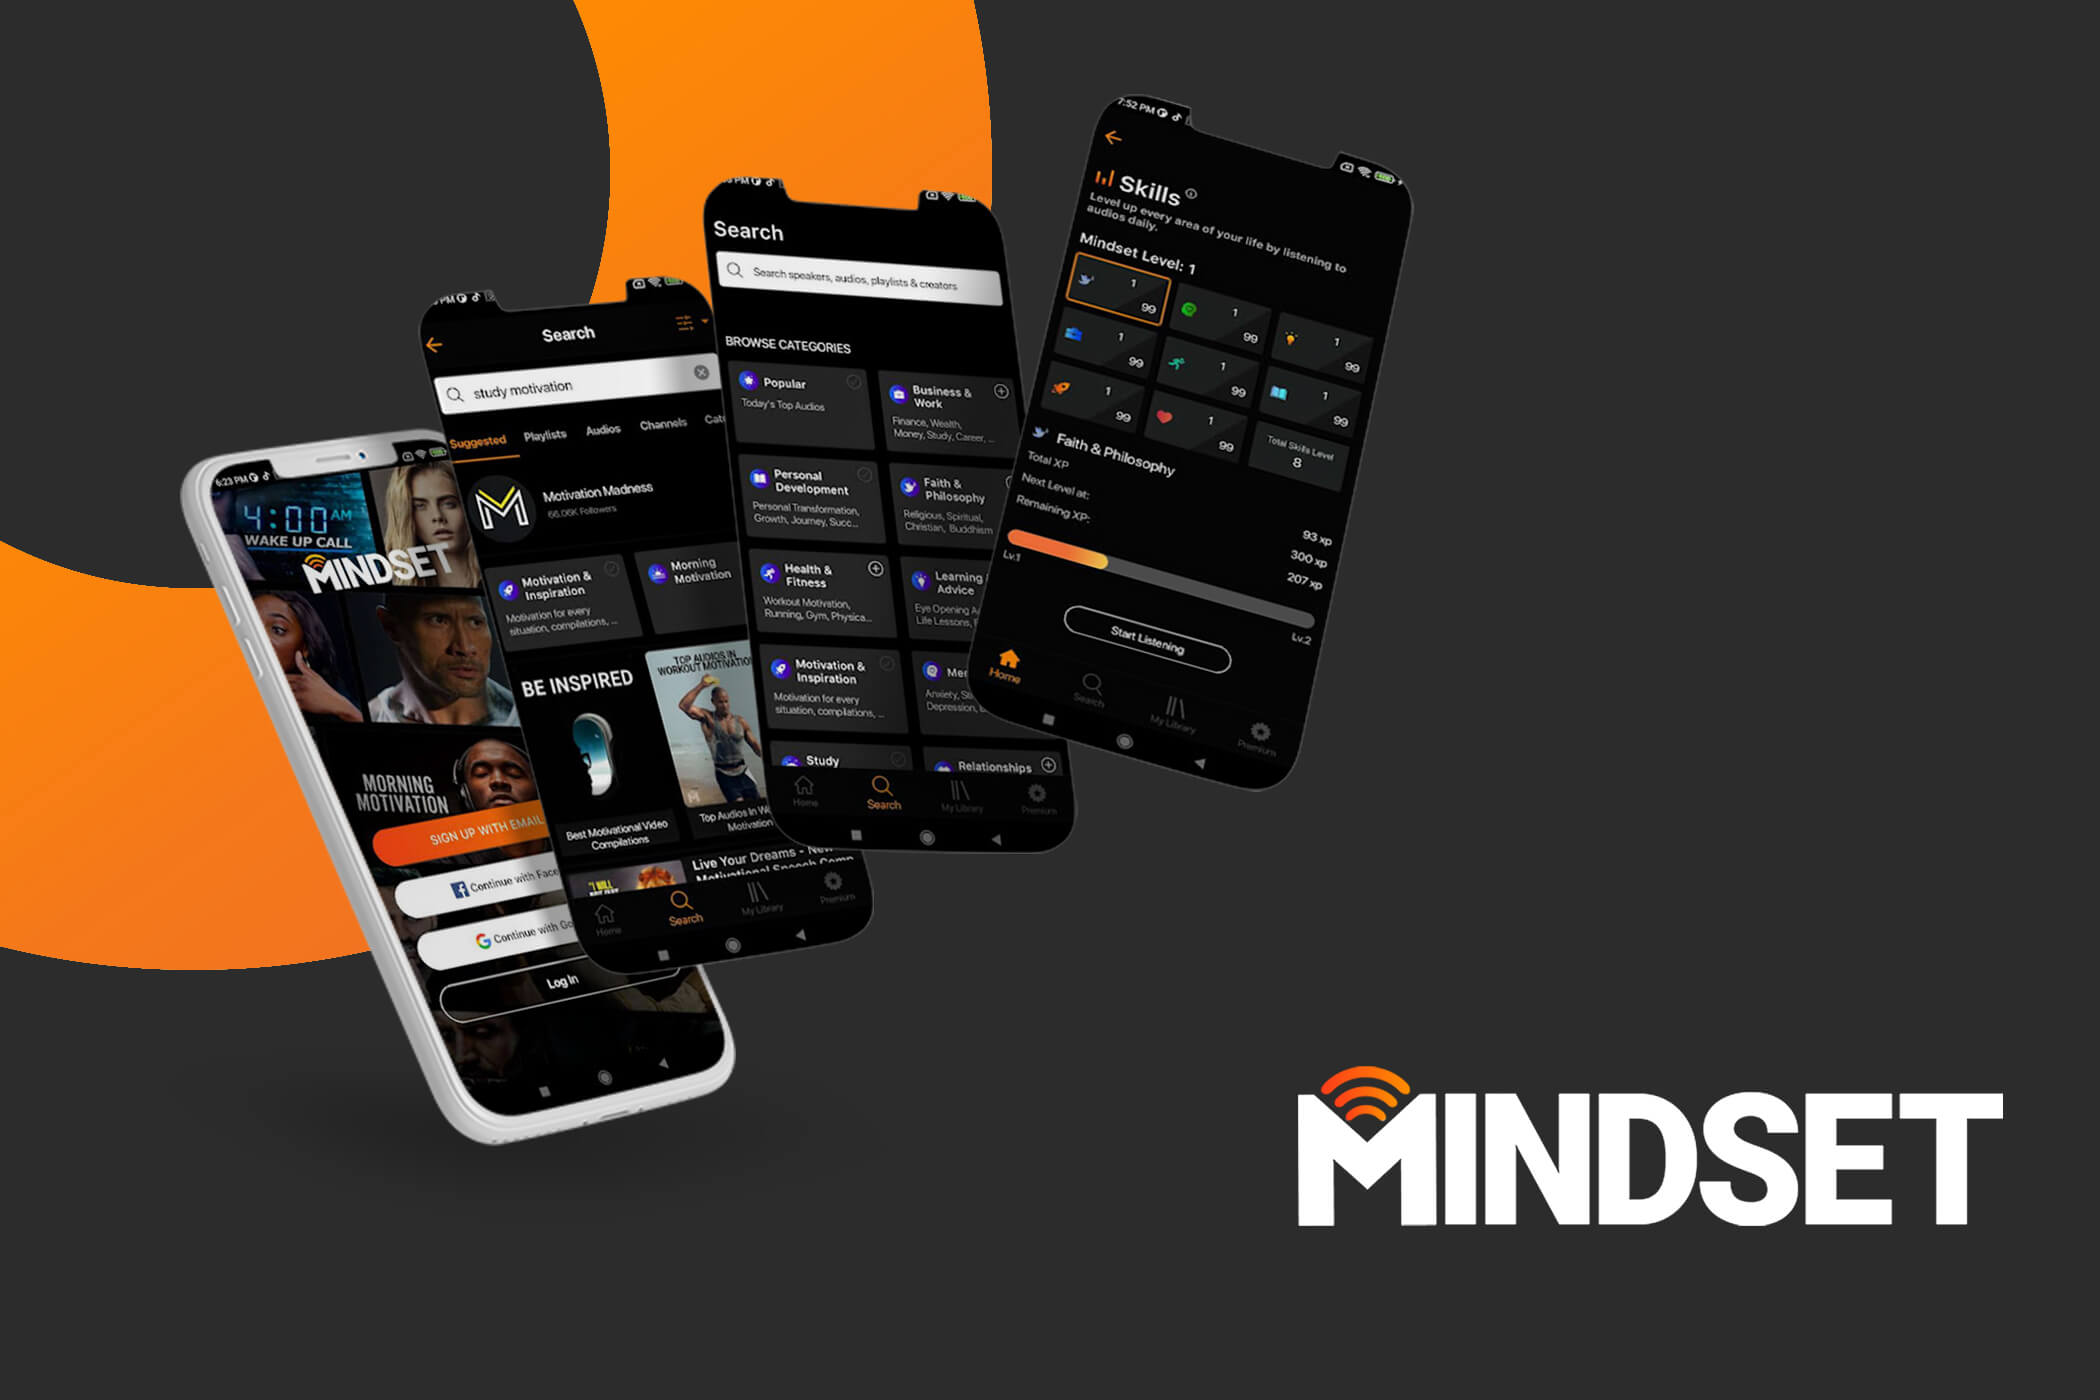 Mindset (Motivation App)